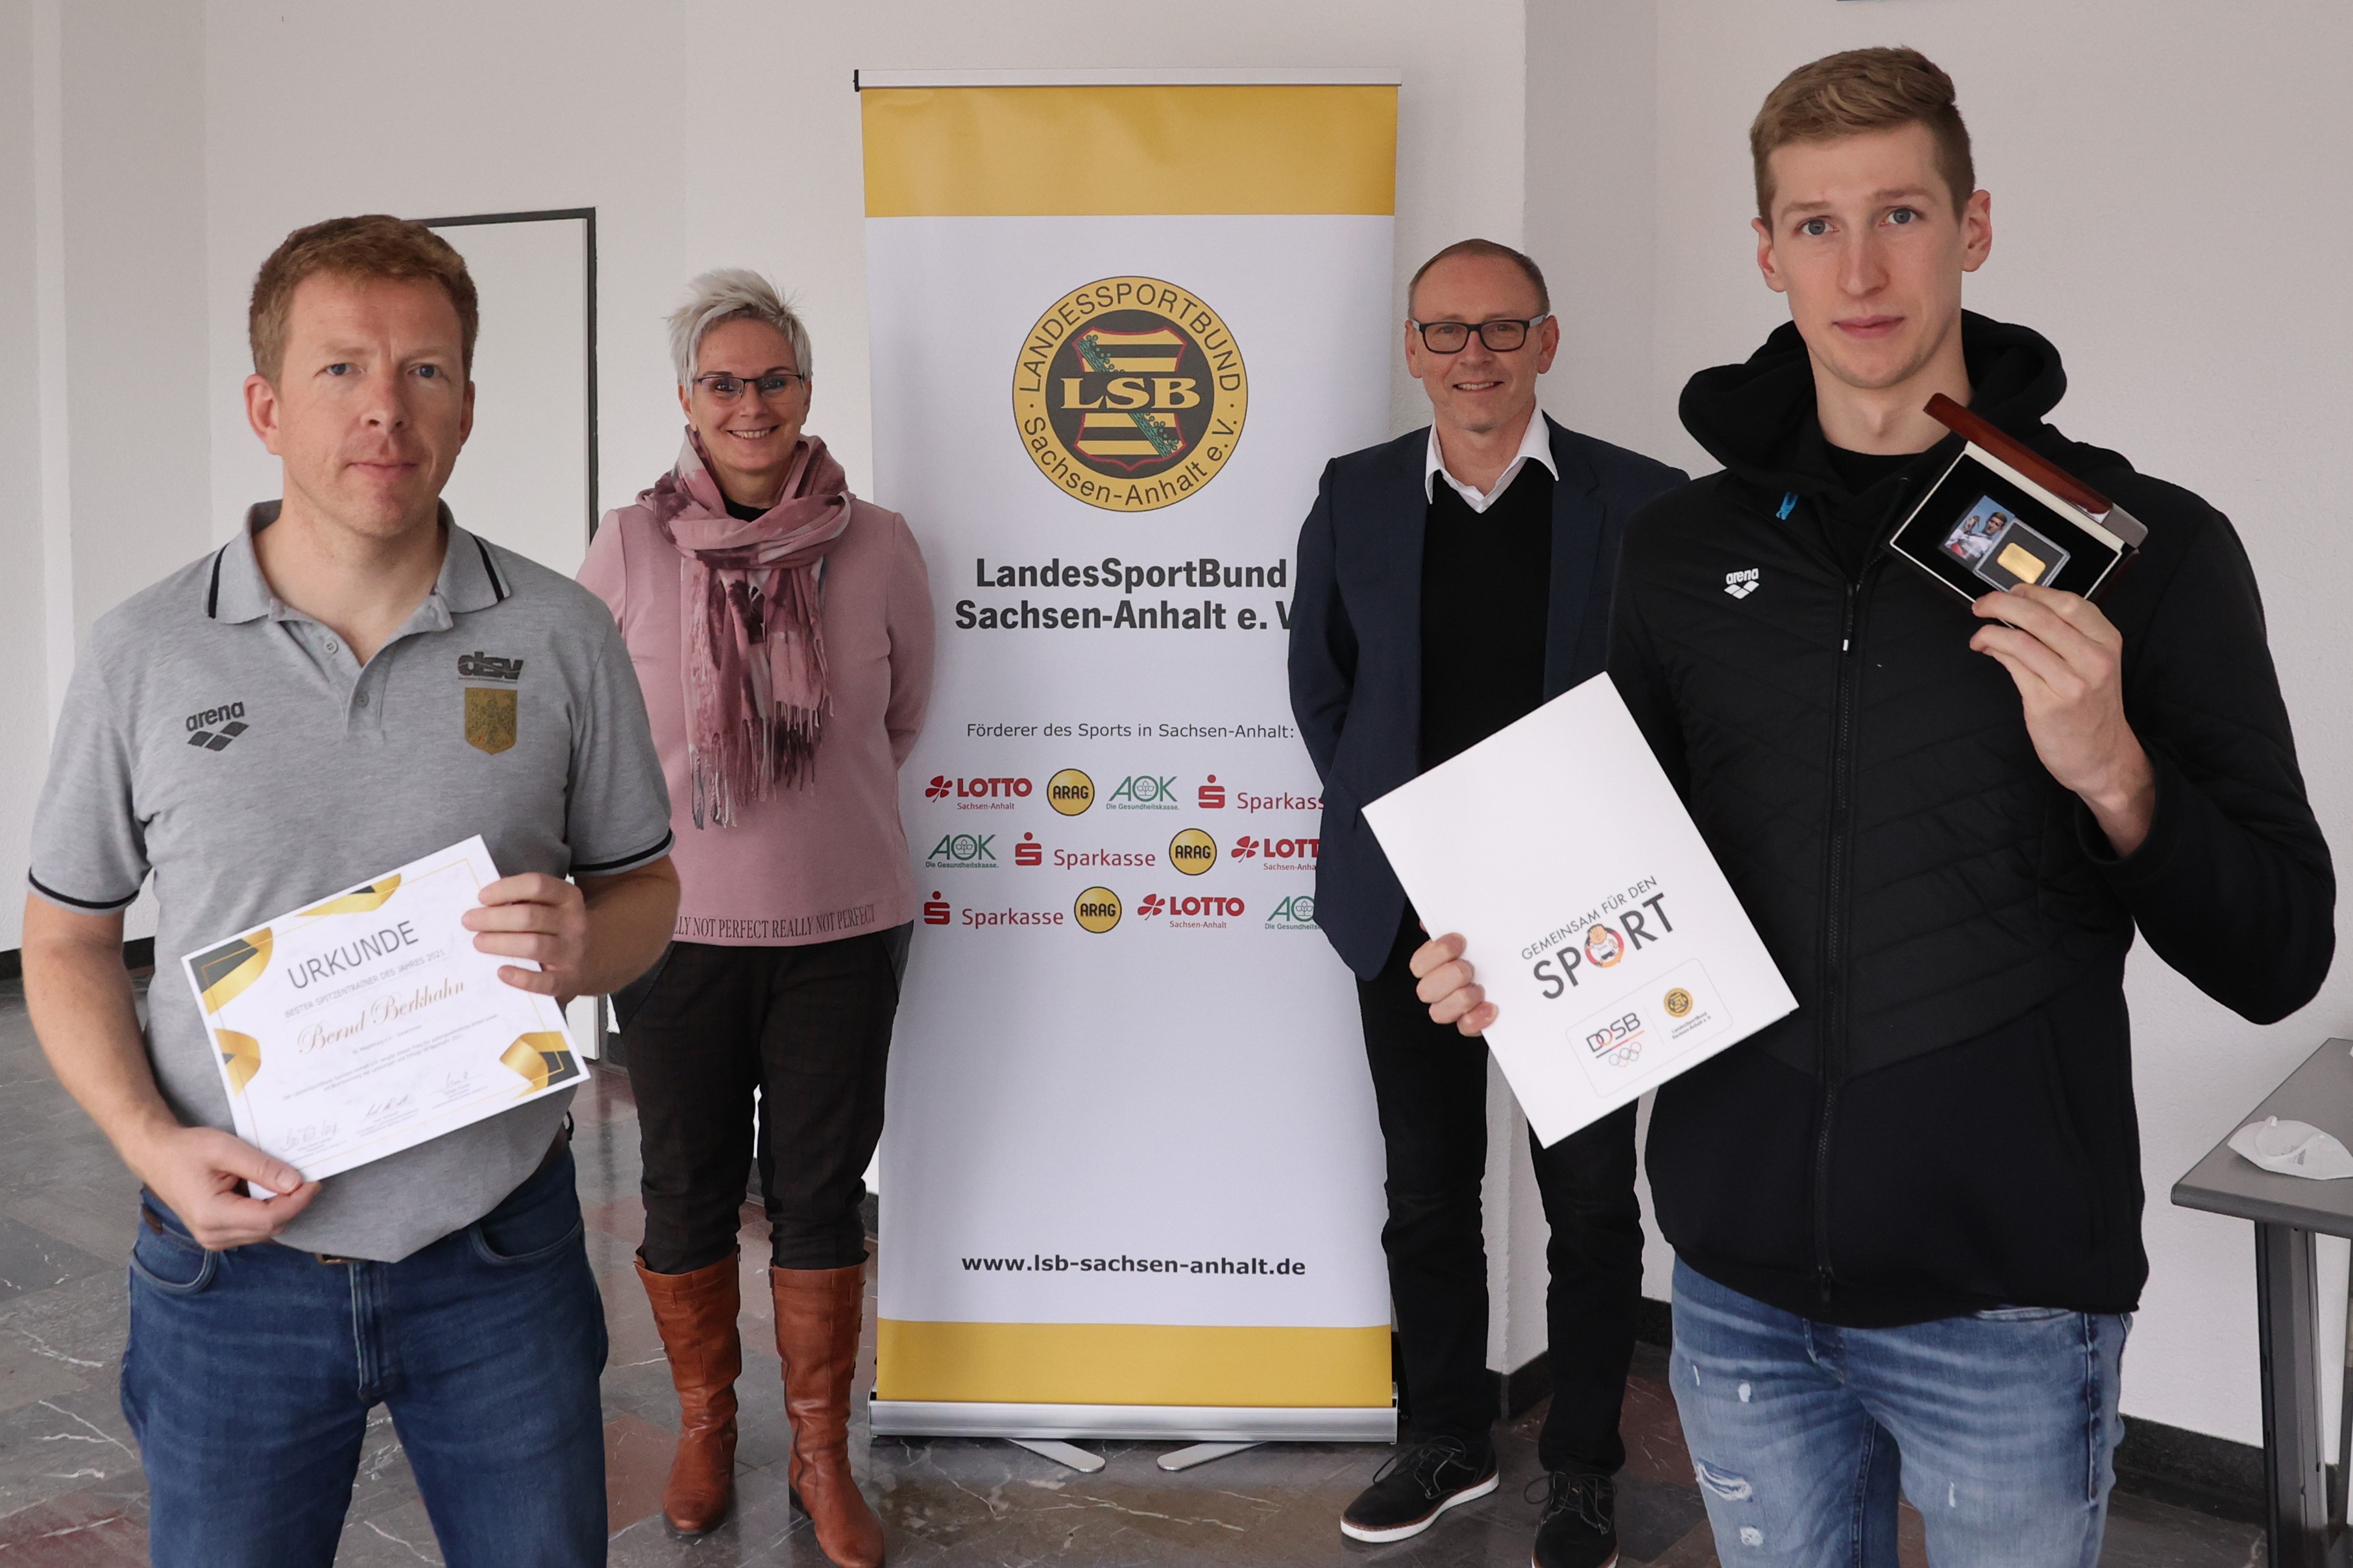 Bernd Berkhahn und sein Athlet Florian Wellbrock wurden in Magdeburg von LSB-Präsidentin Silke Renk-Lange und LSB-Vize Axel Schmidt mit der Ehrung überrascht. (Foto: Eroll Popova)